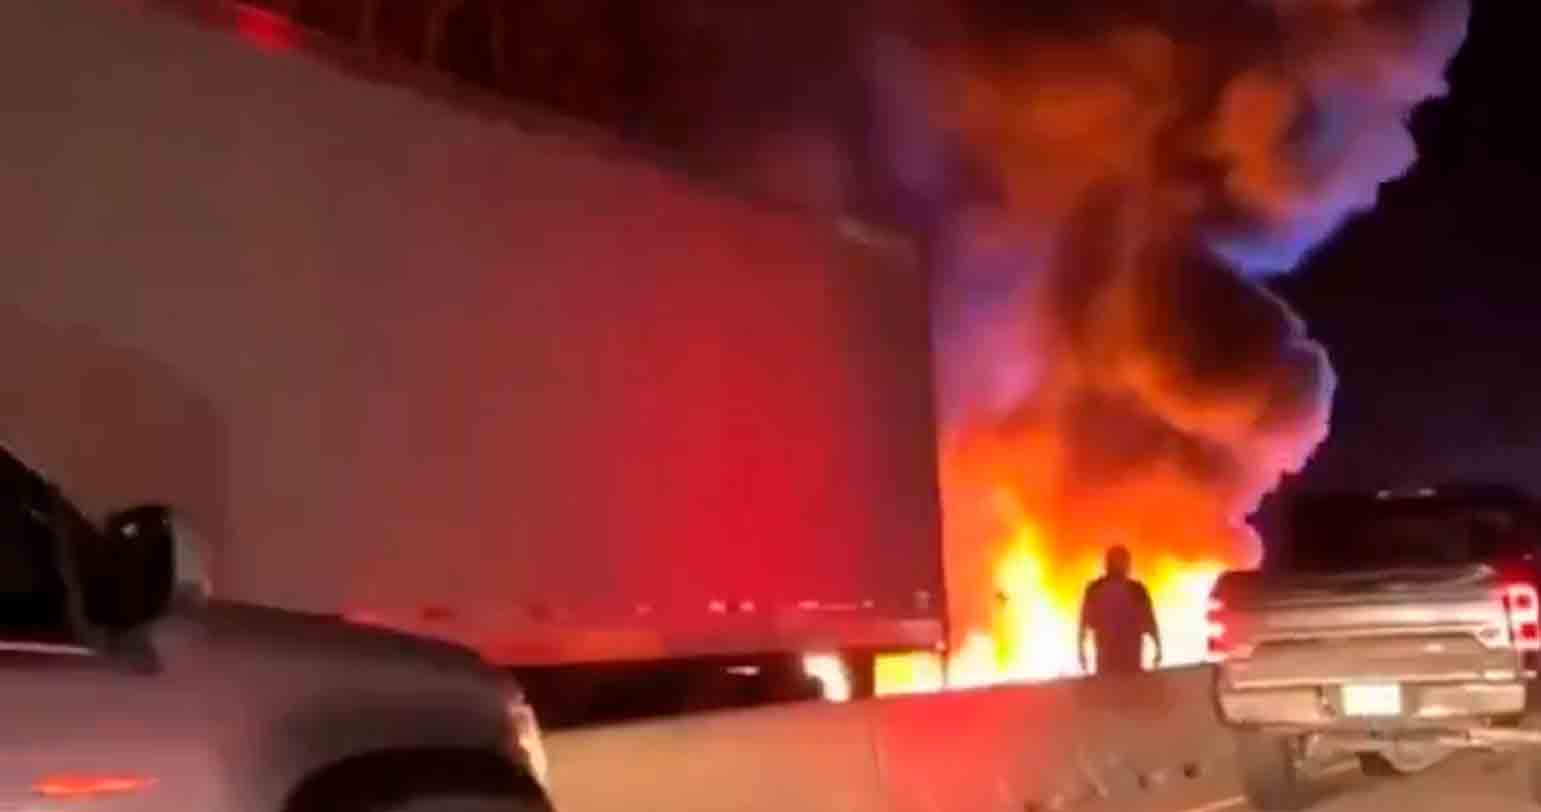 Βίντεο: Αεροσκάφος συντρίβεται και εκρήγνυται σε αυτοκινητόδρομο στη Βόρεια Καρολίνα, 2 αποφεύγουν με σοβαρά τραύματα. Βίντεο και φωτογραφίες: Αναπαραγωγή Twitter @tworldreviews / @vanhoa2272